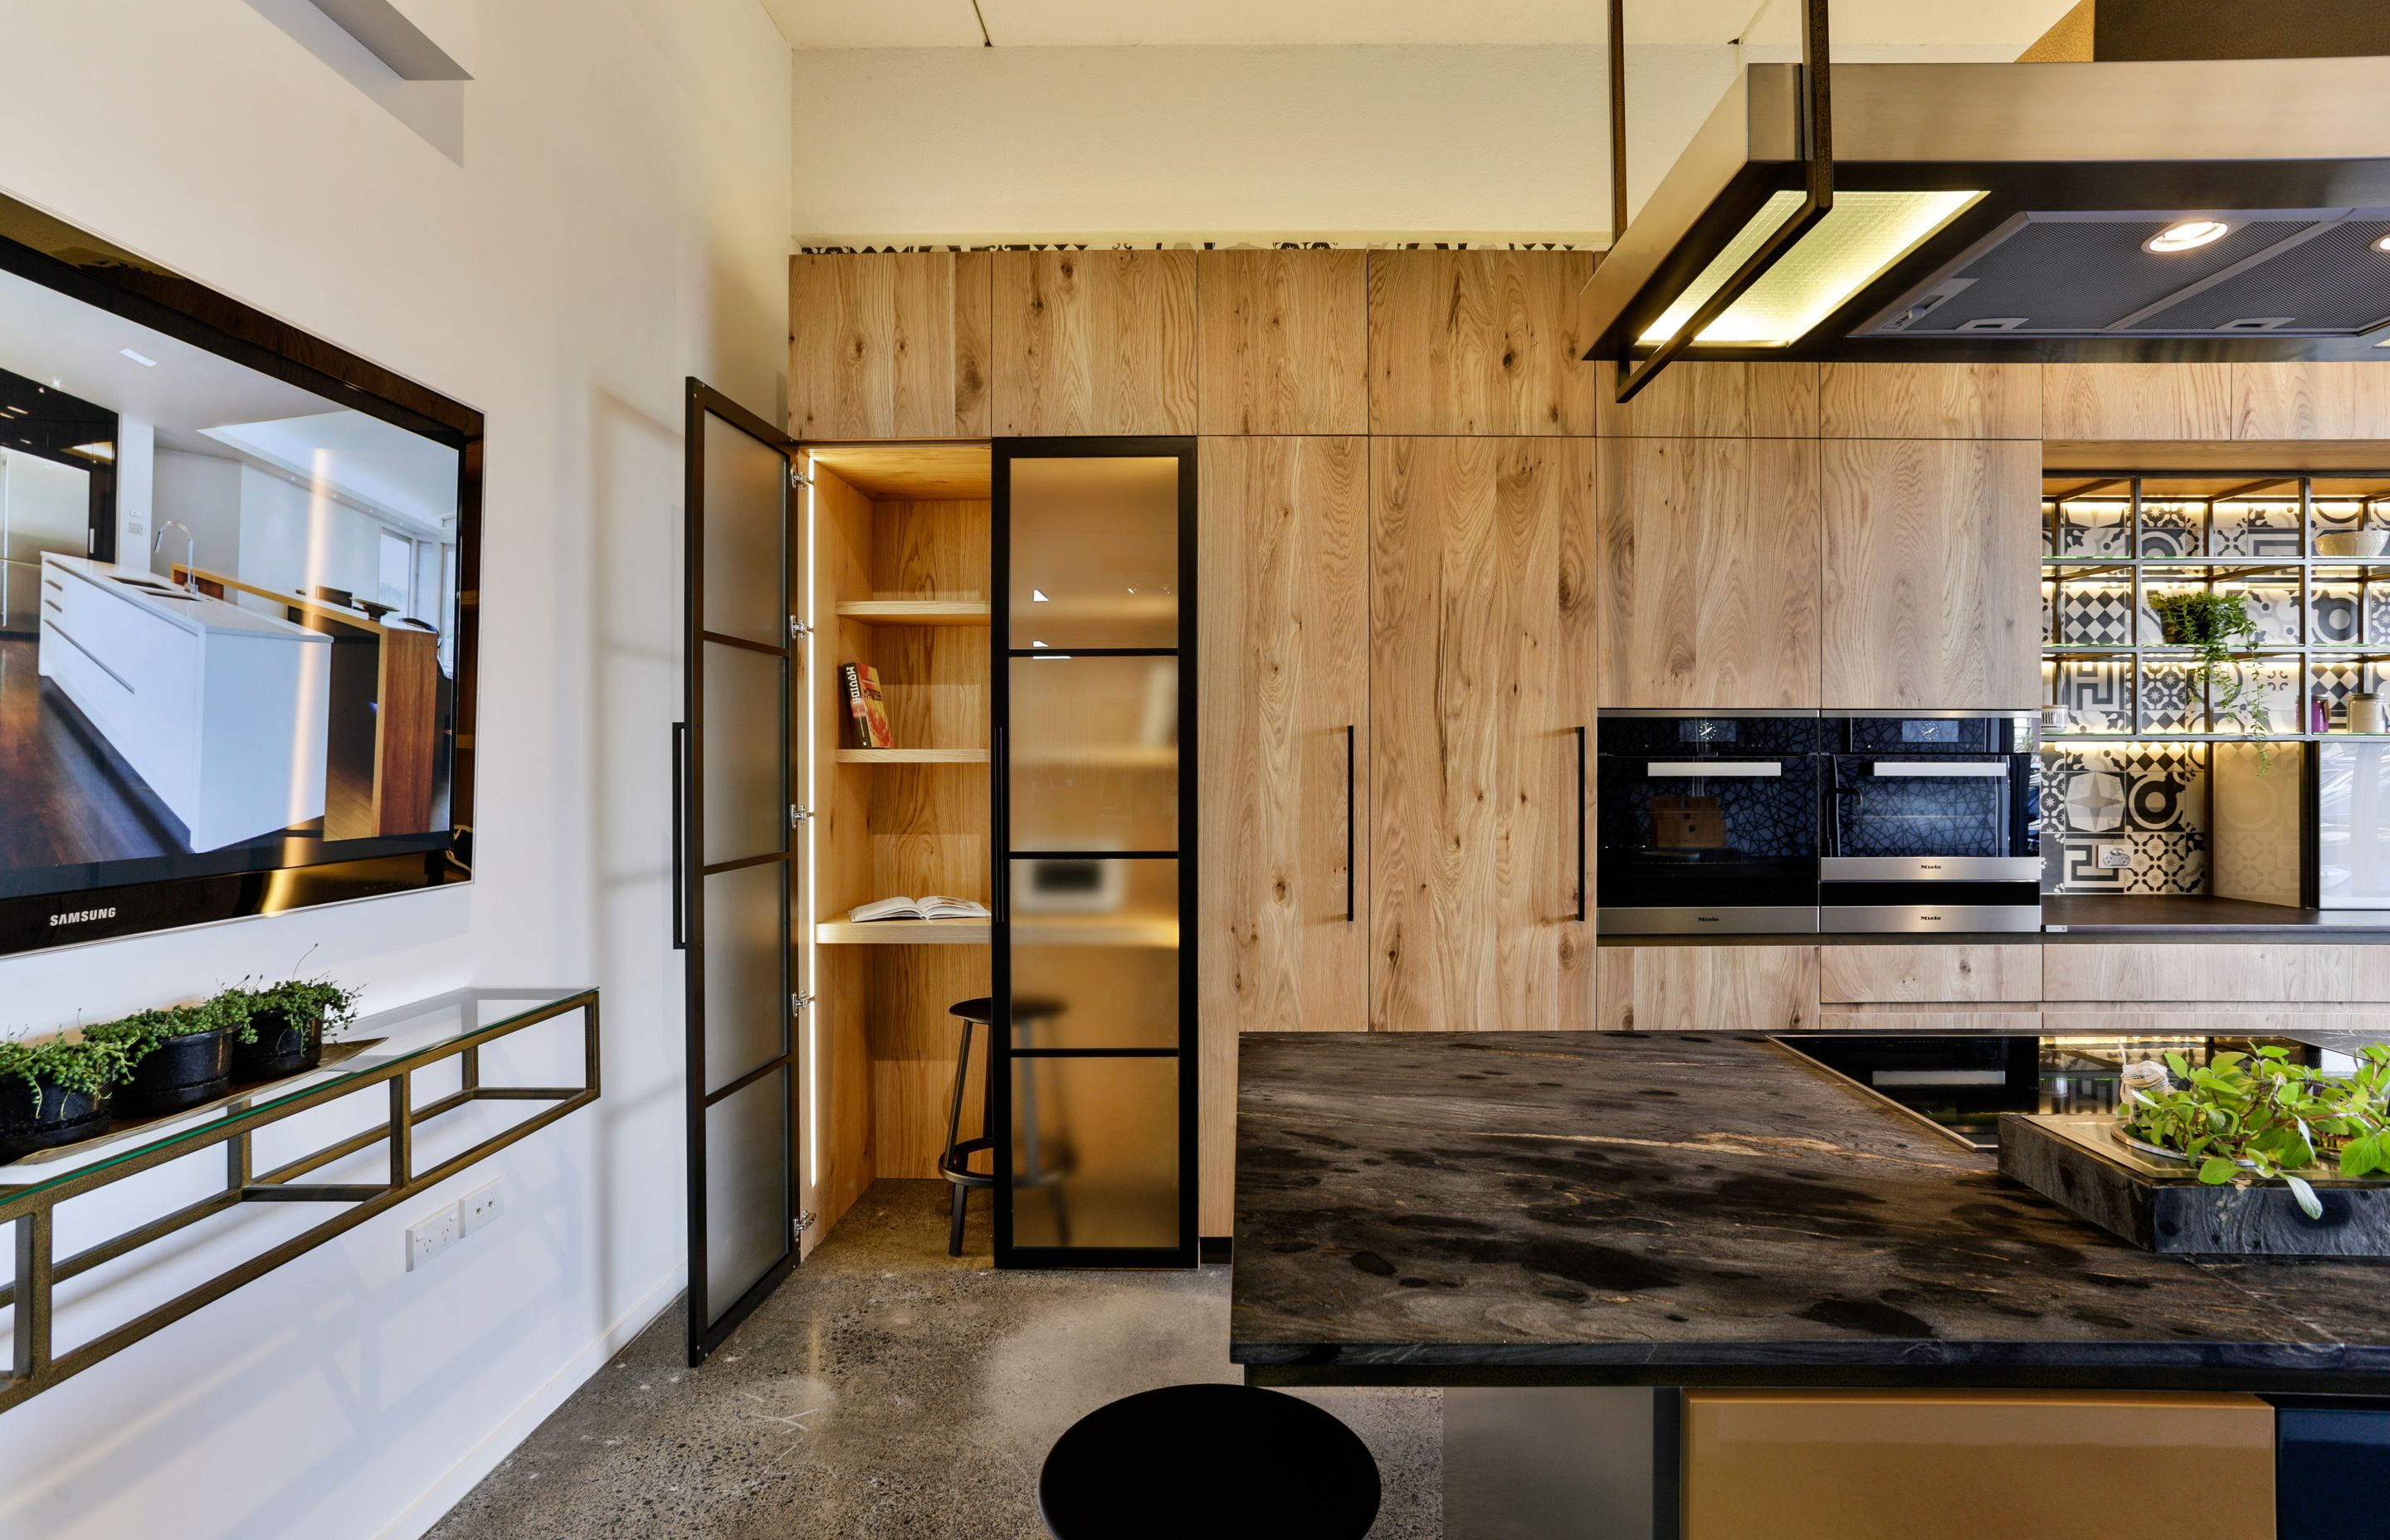 Studio Kitchen by Shane George